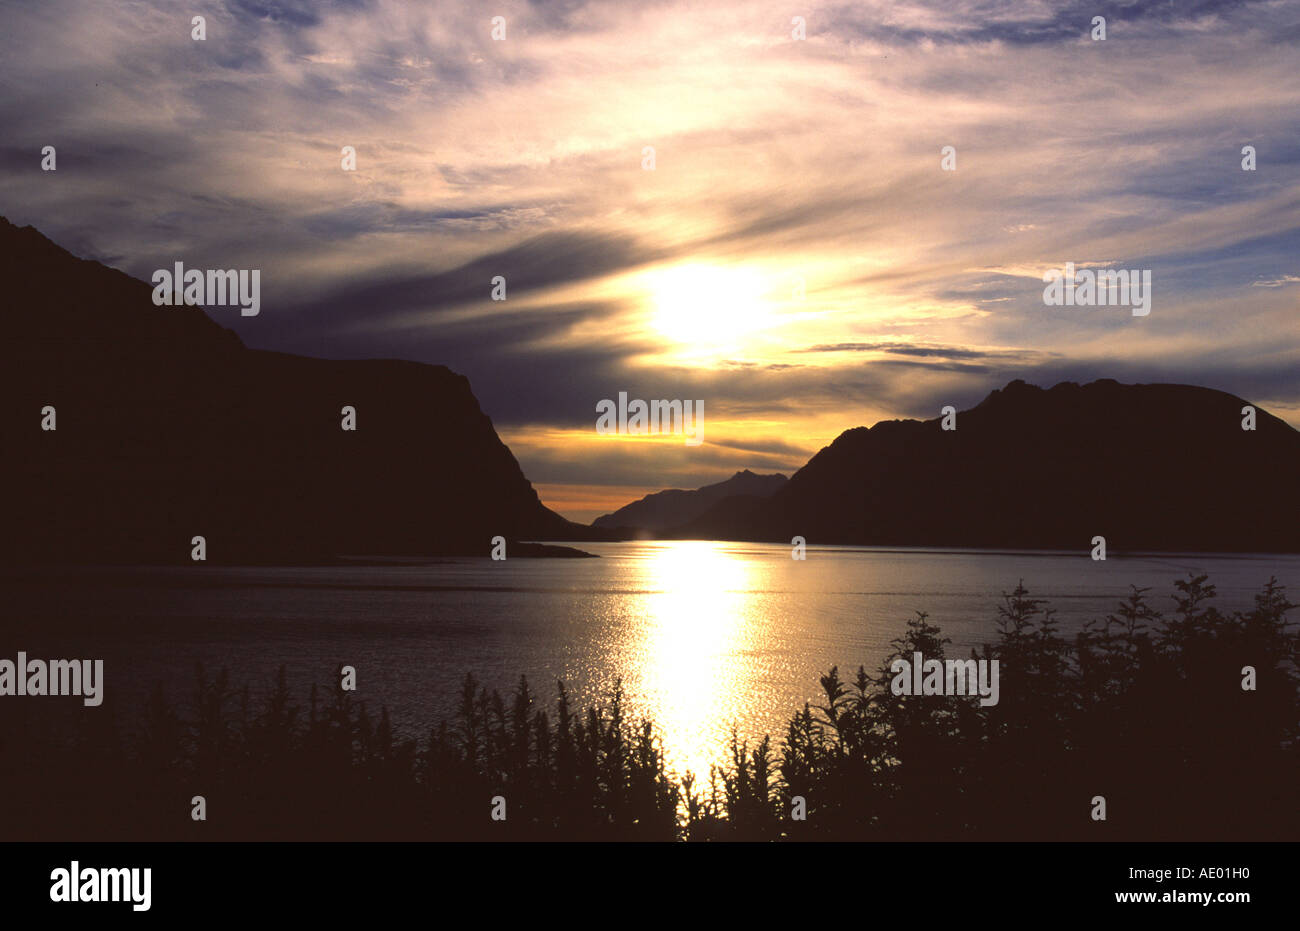 Mitternachtssonne und Berge spiegeln sich im Fjord Norway Foto Stock